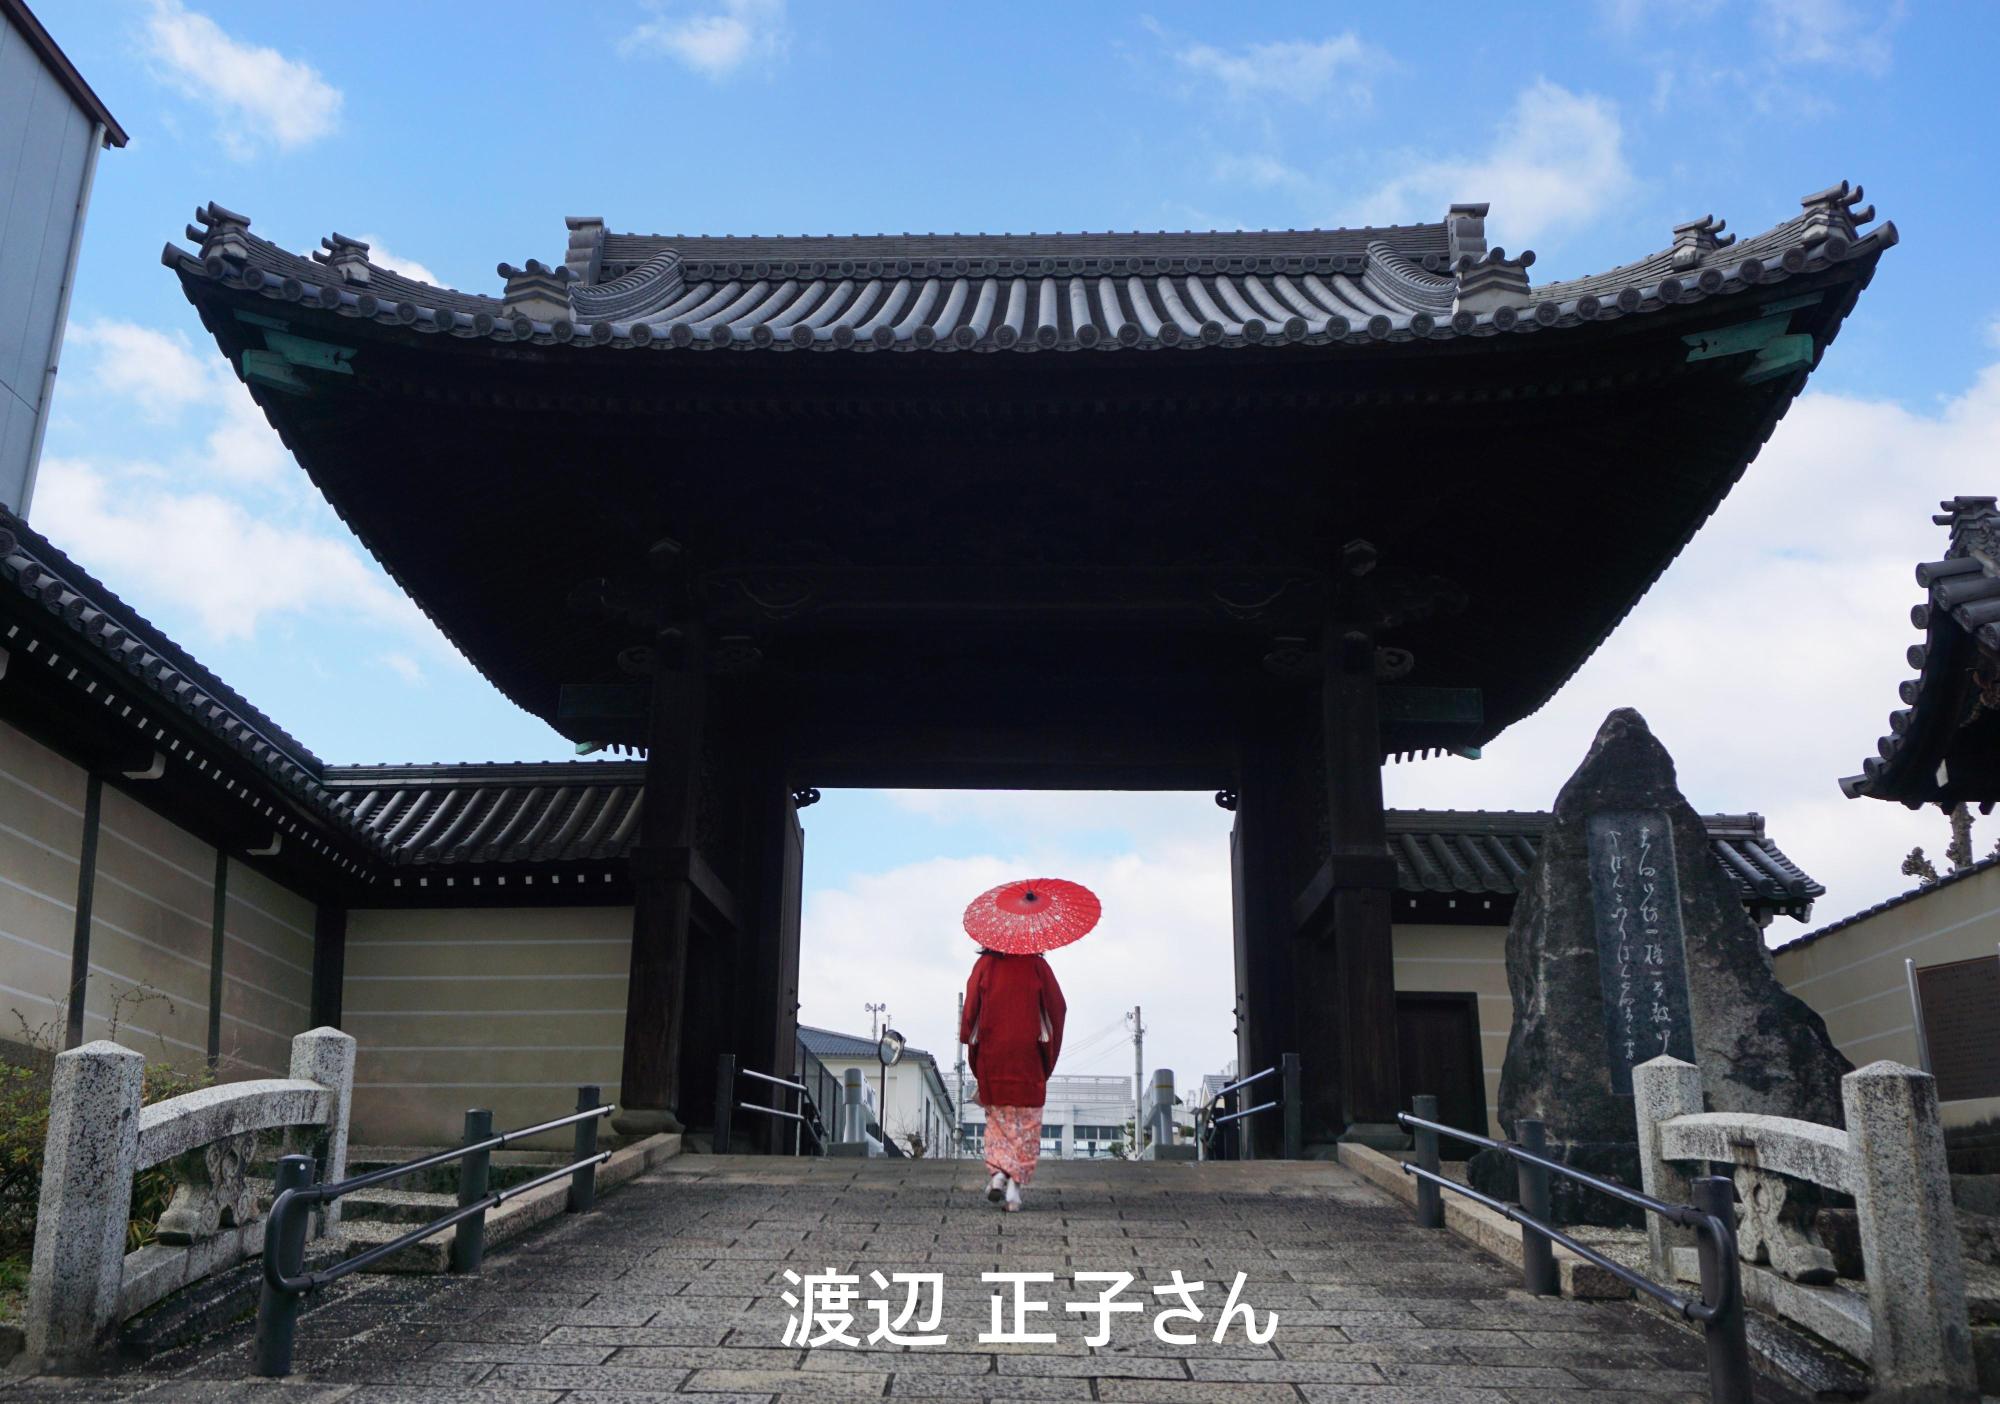 お寺の楼門の下を歩く、薄ピンク色の着物に赤色の和傘を差した女性の後ろ姿を写した写真部門の大賞受賞作品